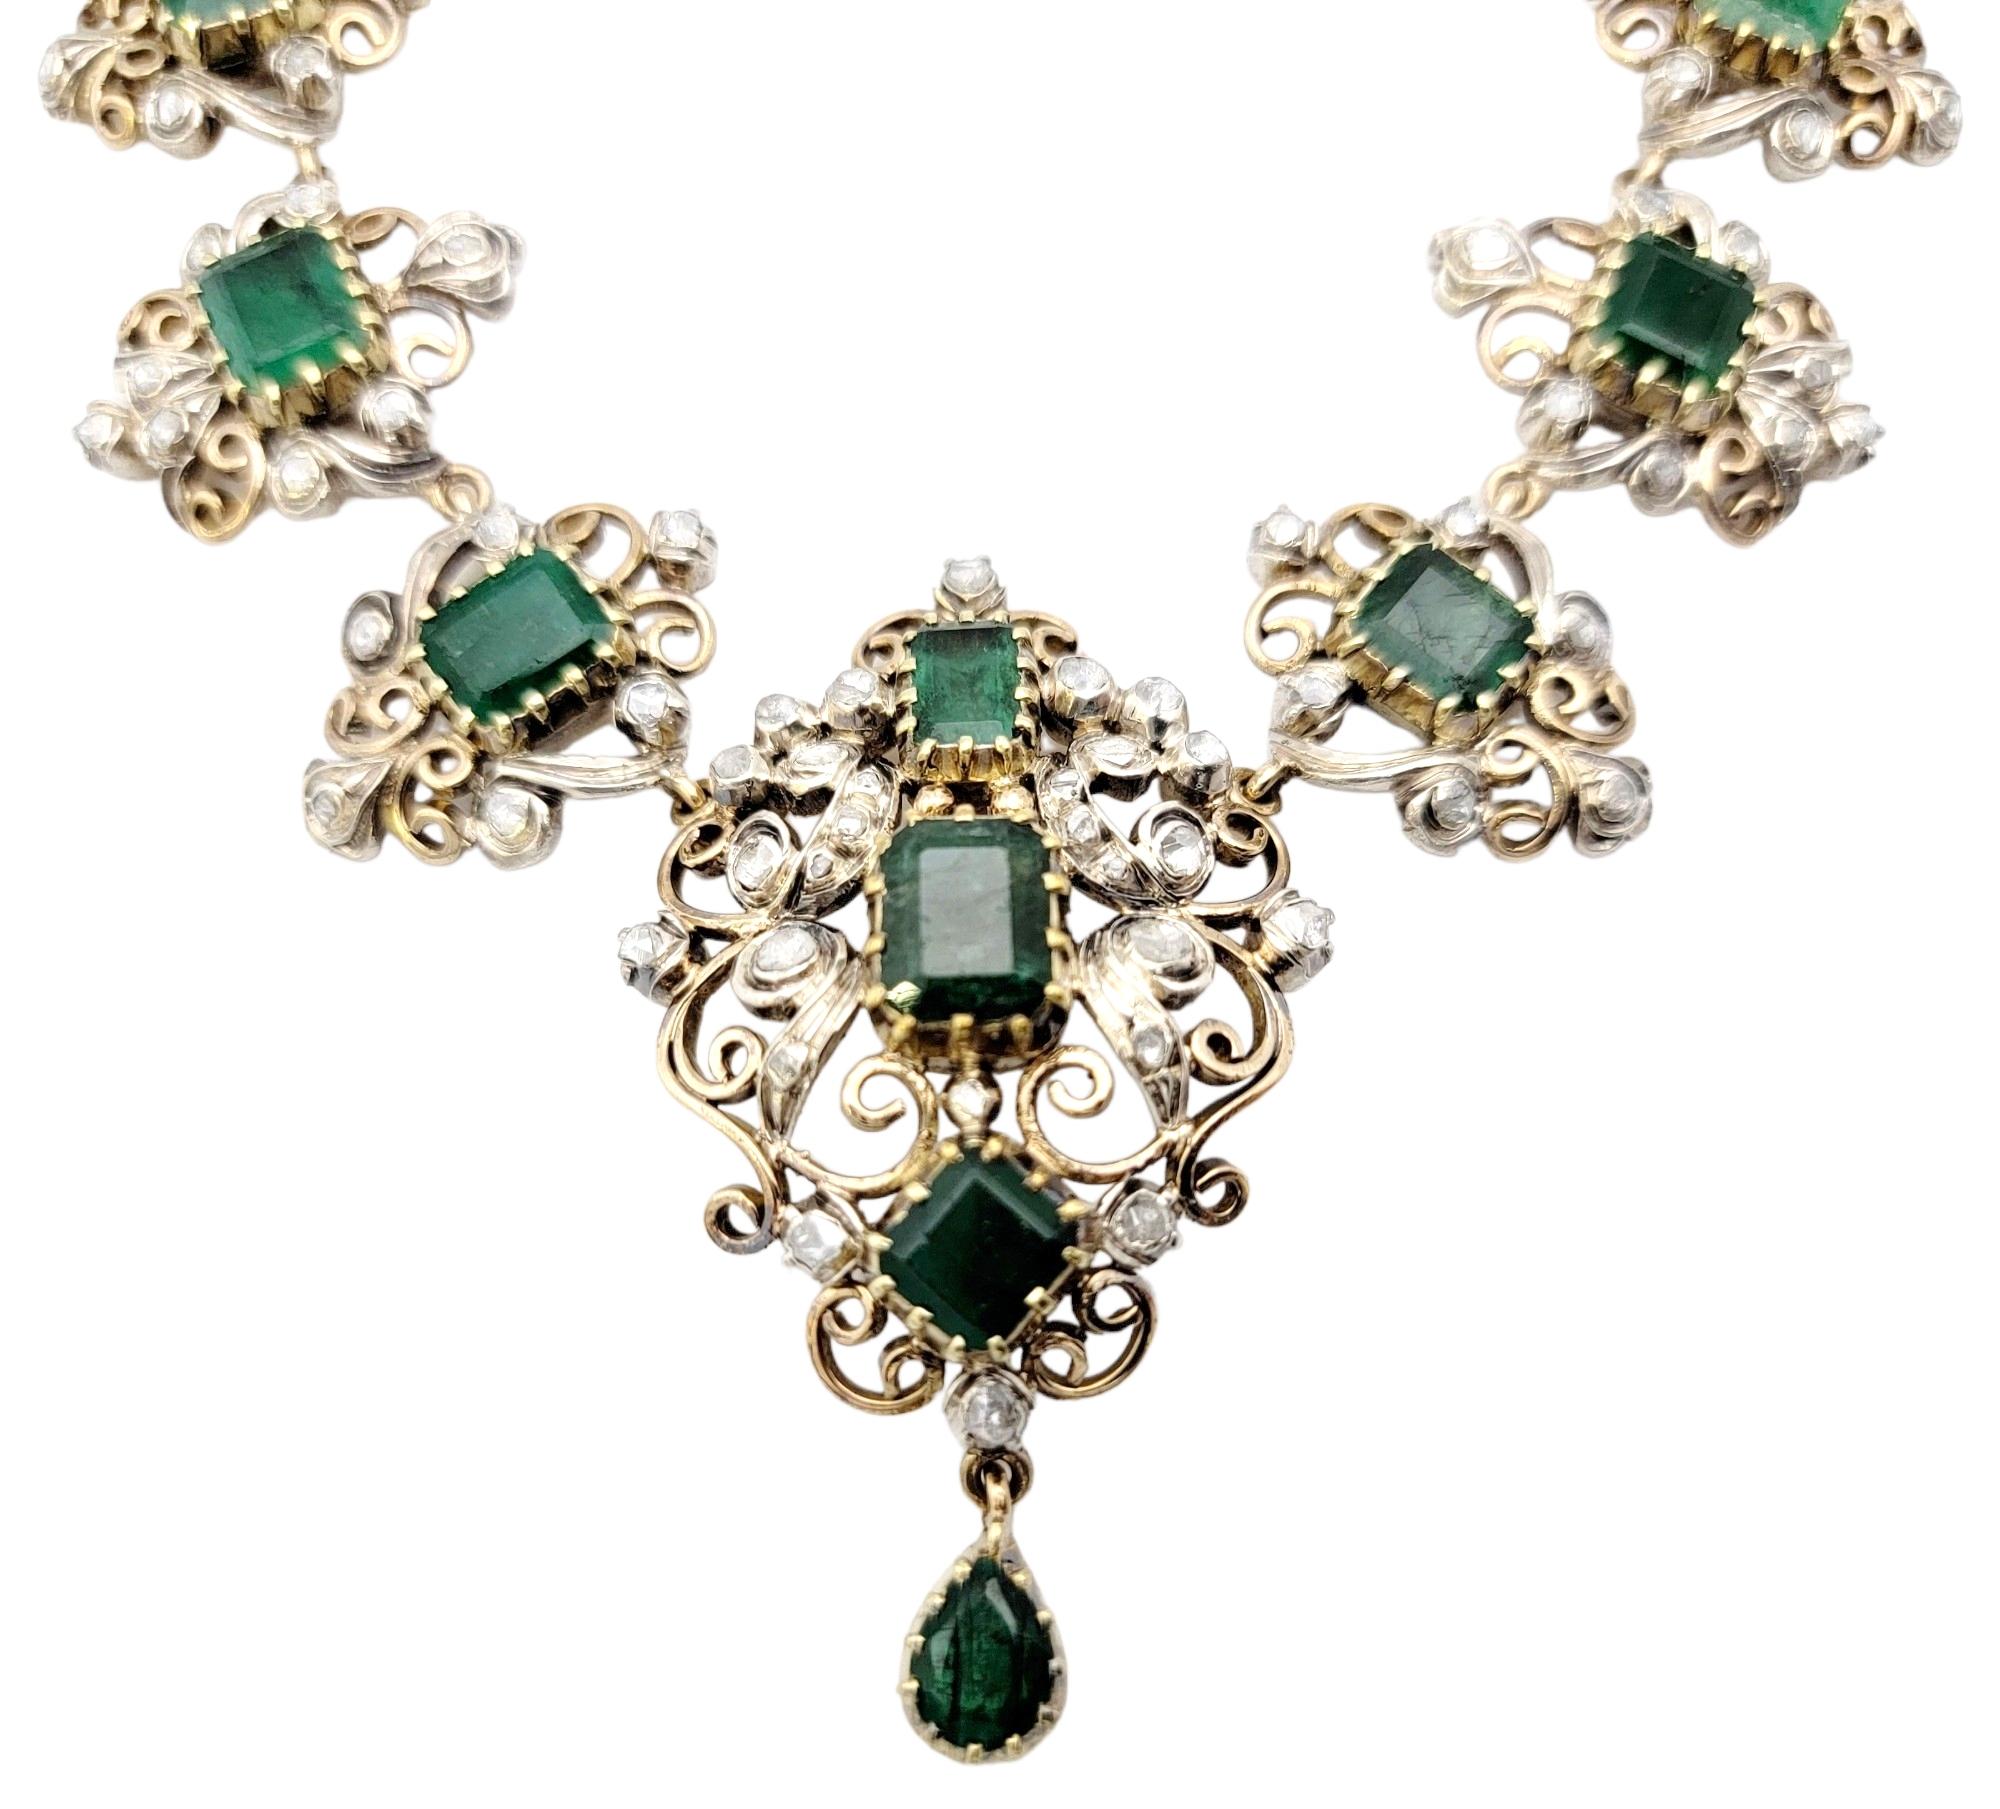 Lassen Sie sich mit dieser außergewöhnlichen, antiken Halskette aus der viktorianischen Ära in eine Welt zeitloser Schönheit und Raffinesse entführen. Geschmückt mit faszinierenden Smaragden und schillernden Diamanten, fängt dieses exquisite Stück